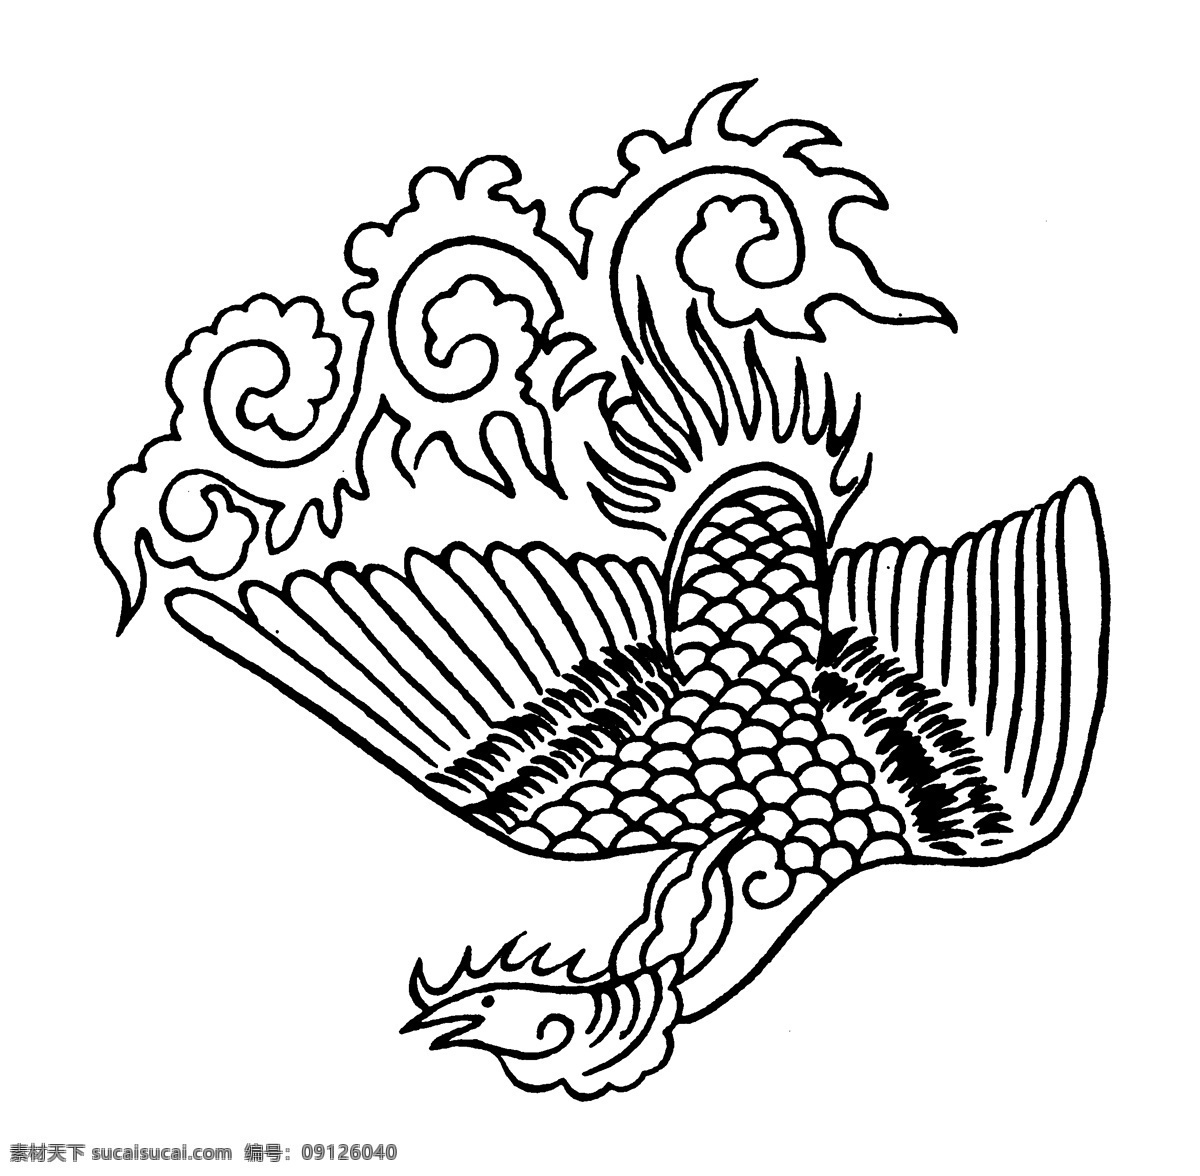 龙凤图案 元明时代图案 中国 传统 图案 设计素材 龙凤图纹 装饰图案 书画美术 白色